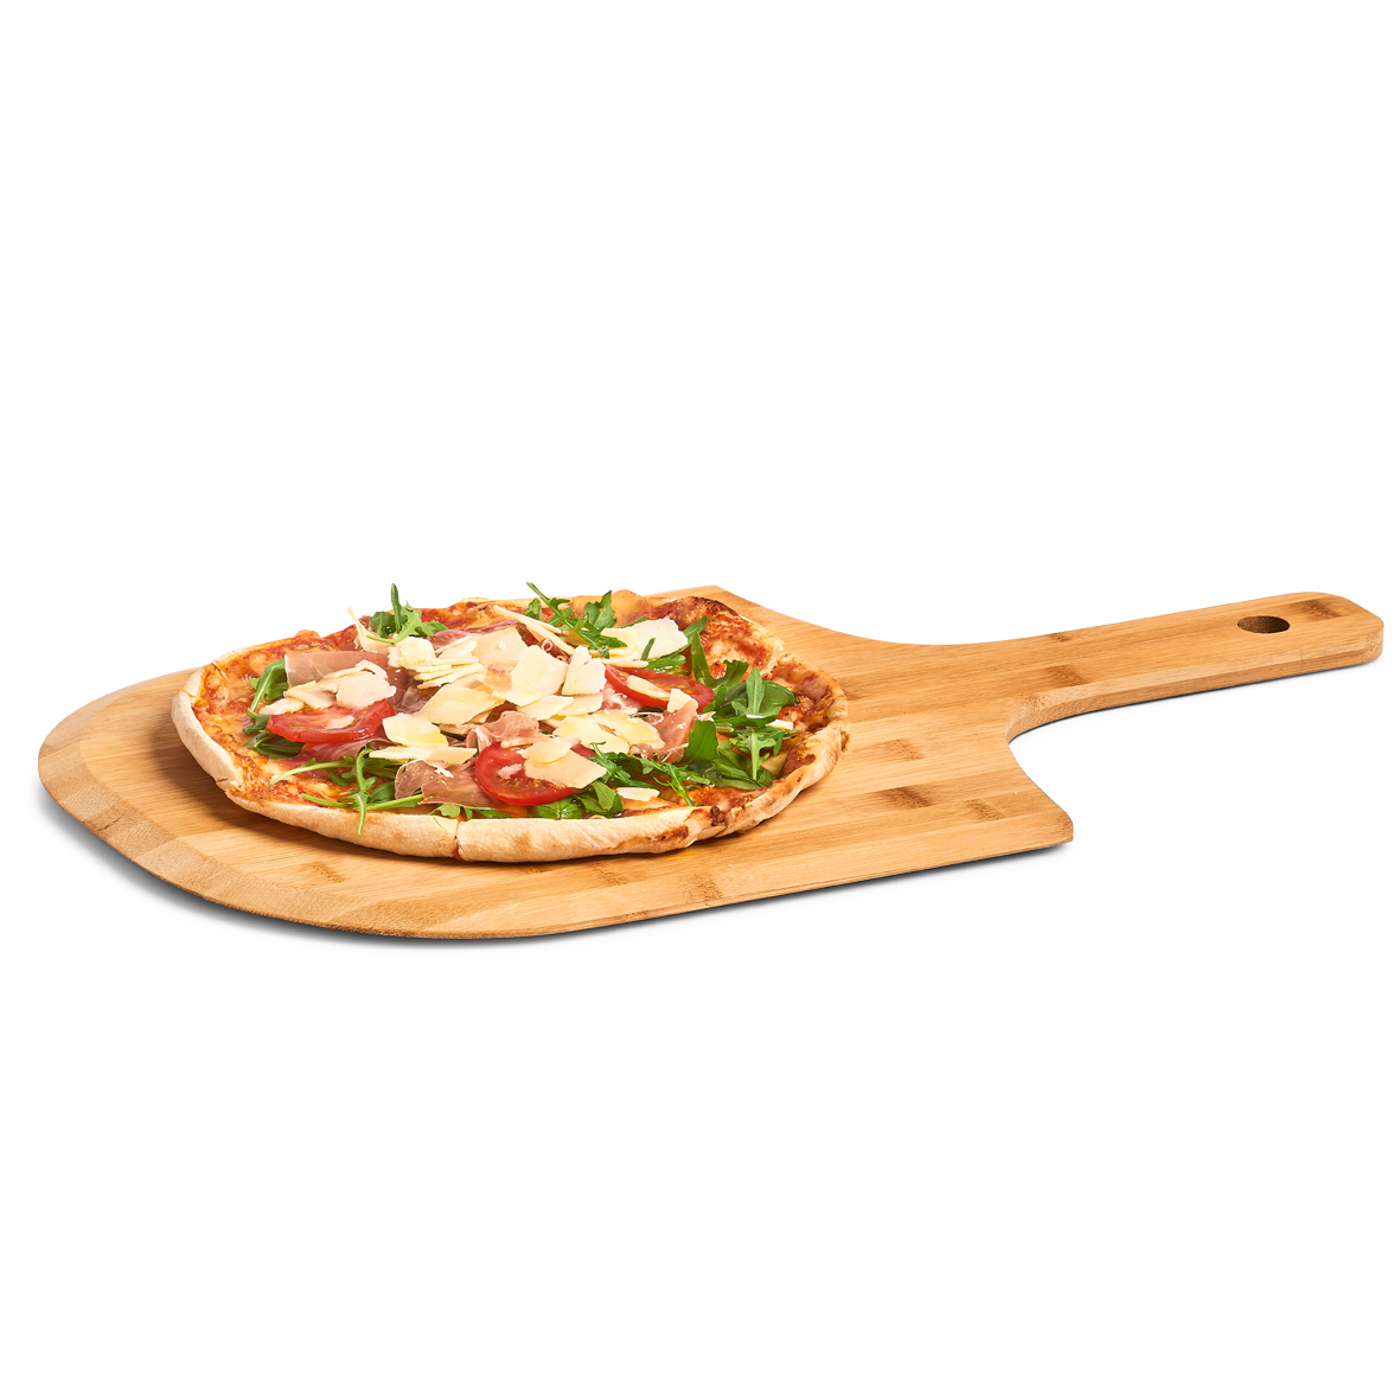 Pizzabrett, Bamboo, 53,5x30,5x1,2 cm. Farbe: natur. Servieren Sie Ihre Pizza stilecht auf einem hochwertigen Pizzabrett aus nachhaltigem